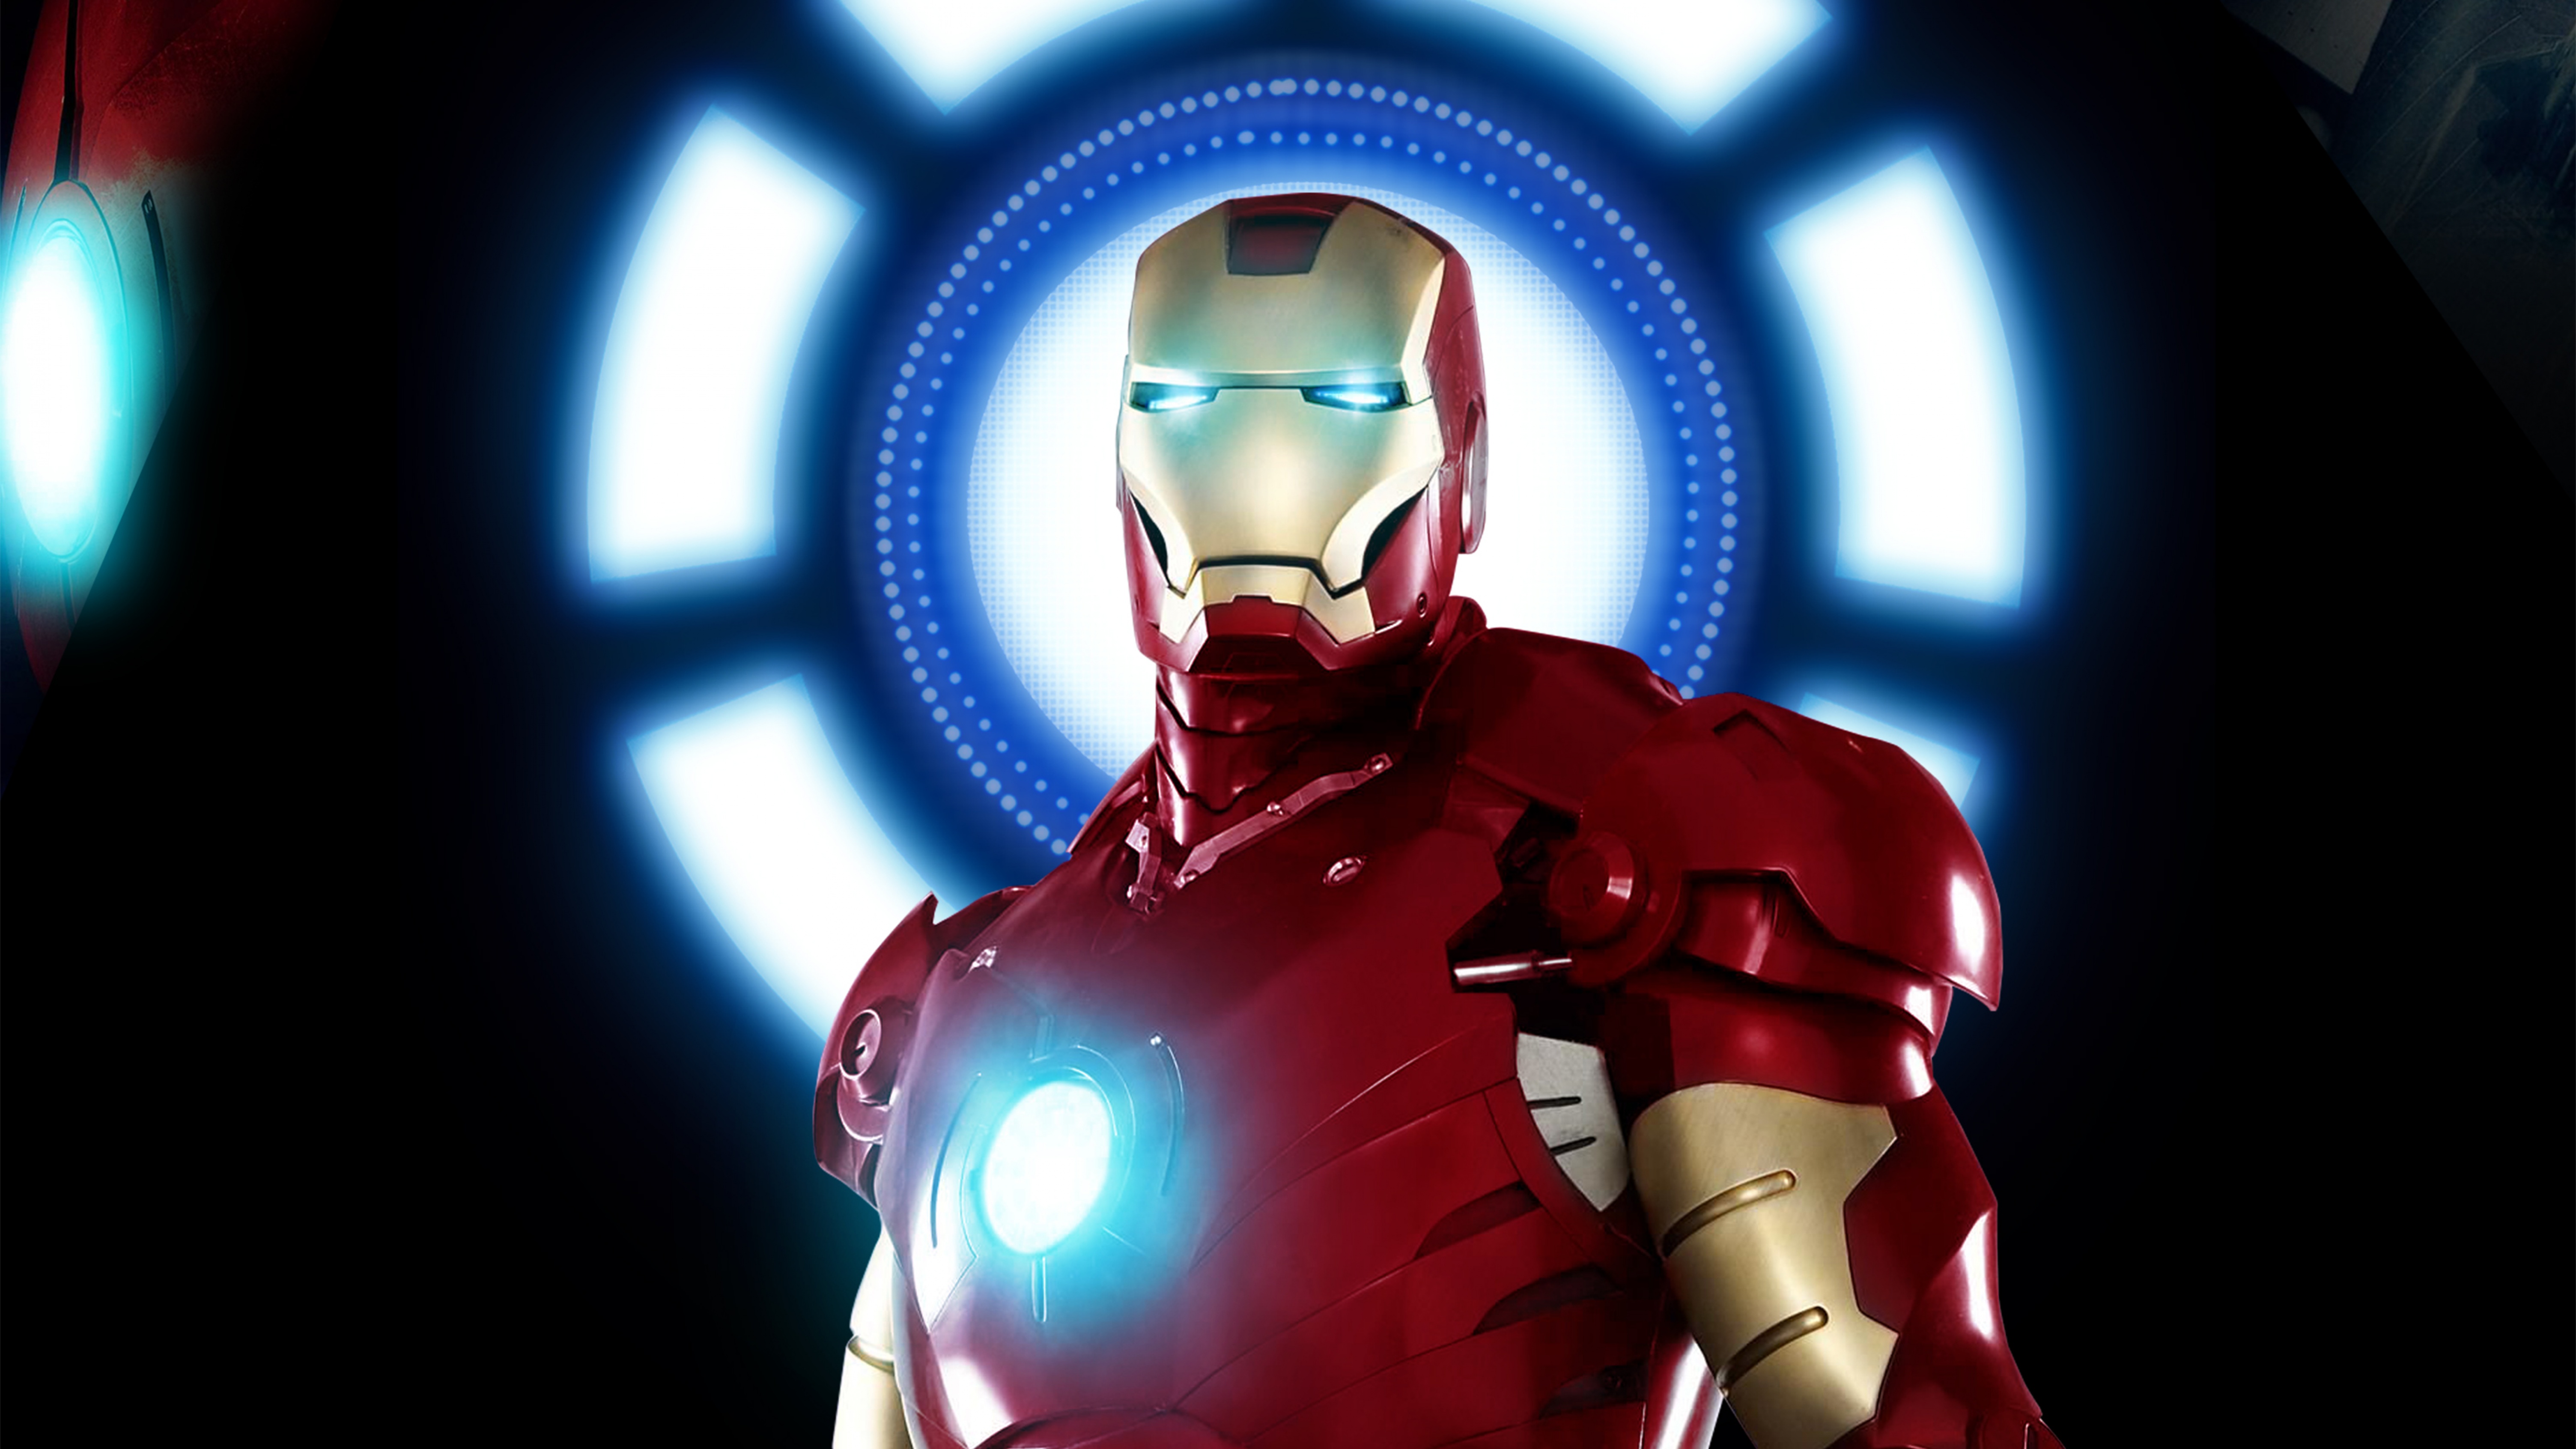 Iron Man - Siêu anh hùng tài ba với trang bị công nghệ cao đầy ấn tượng. Hãy xem ngay hình nền về Iron Man để khám phá thêm về nhân vật huyền thoại này.